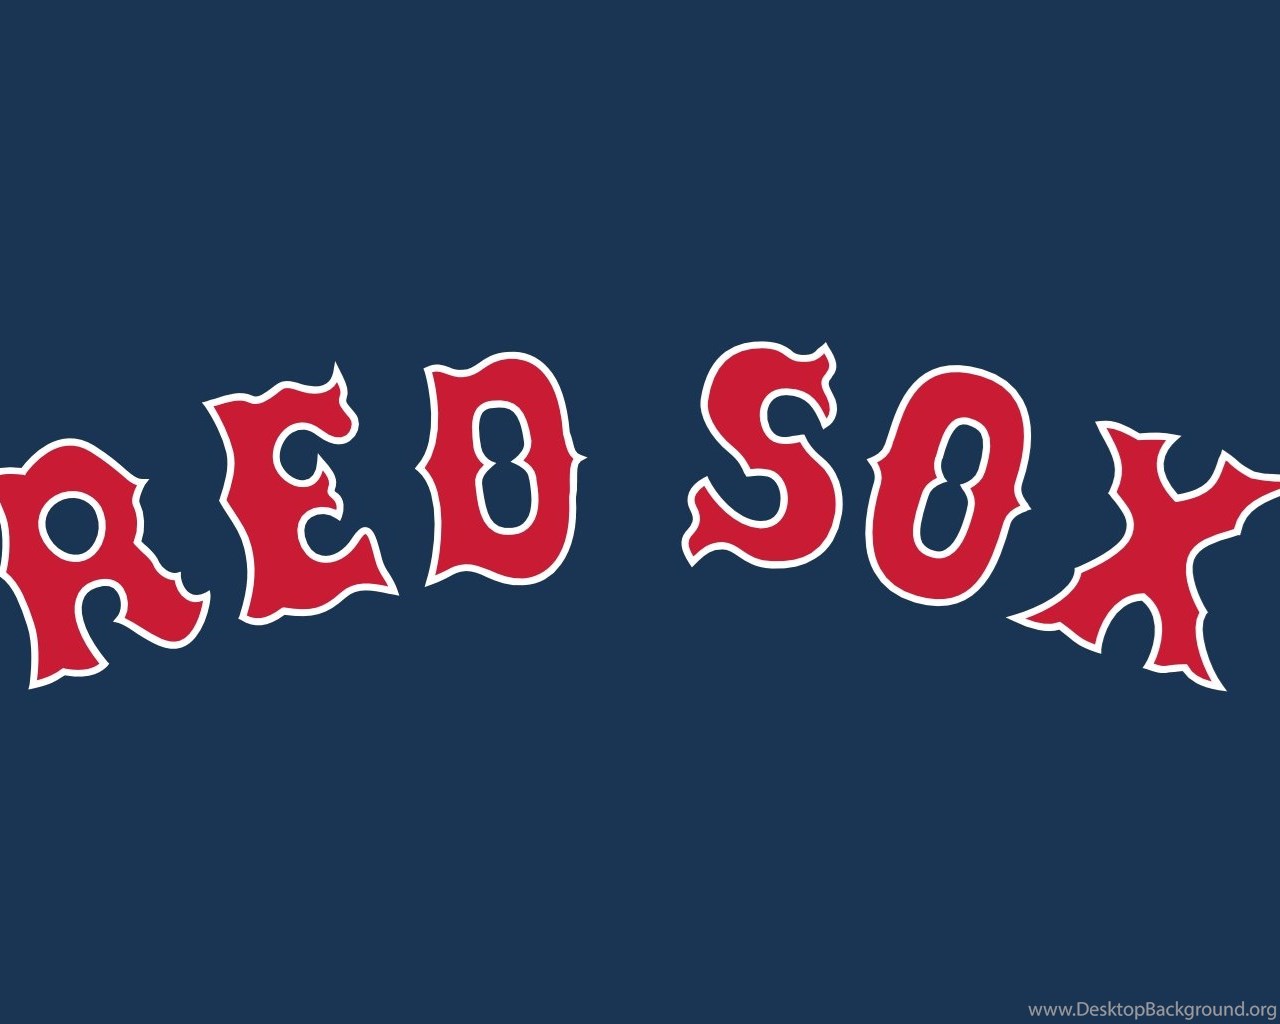 D.C. Red Sox (Sean) Avatar